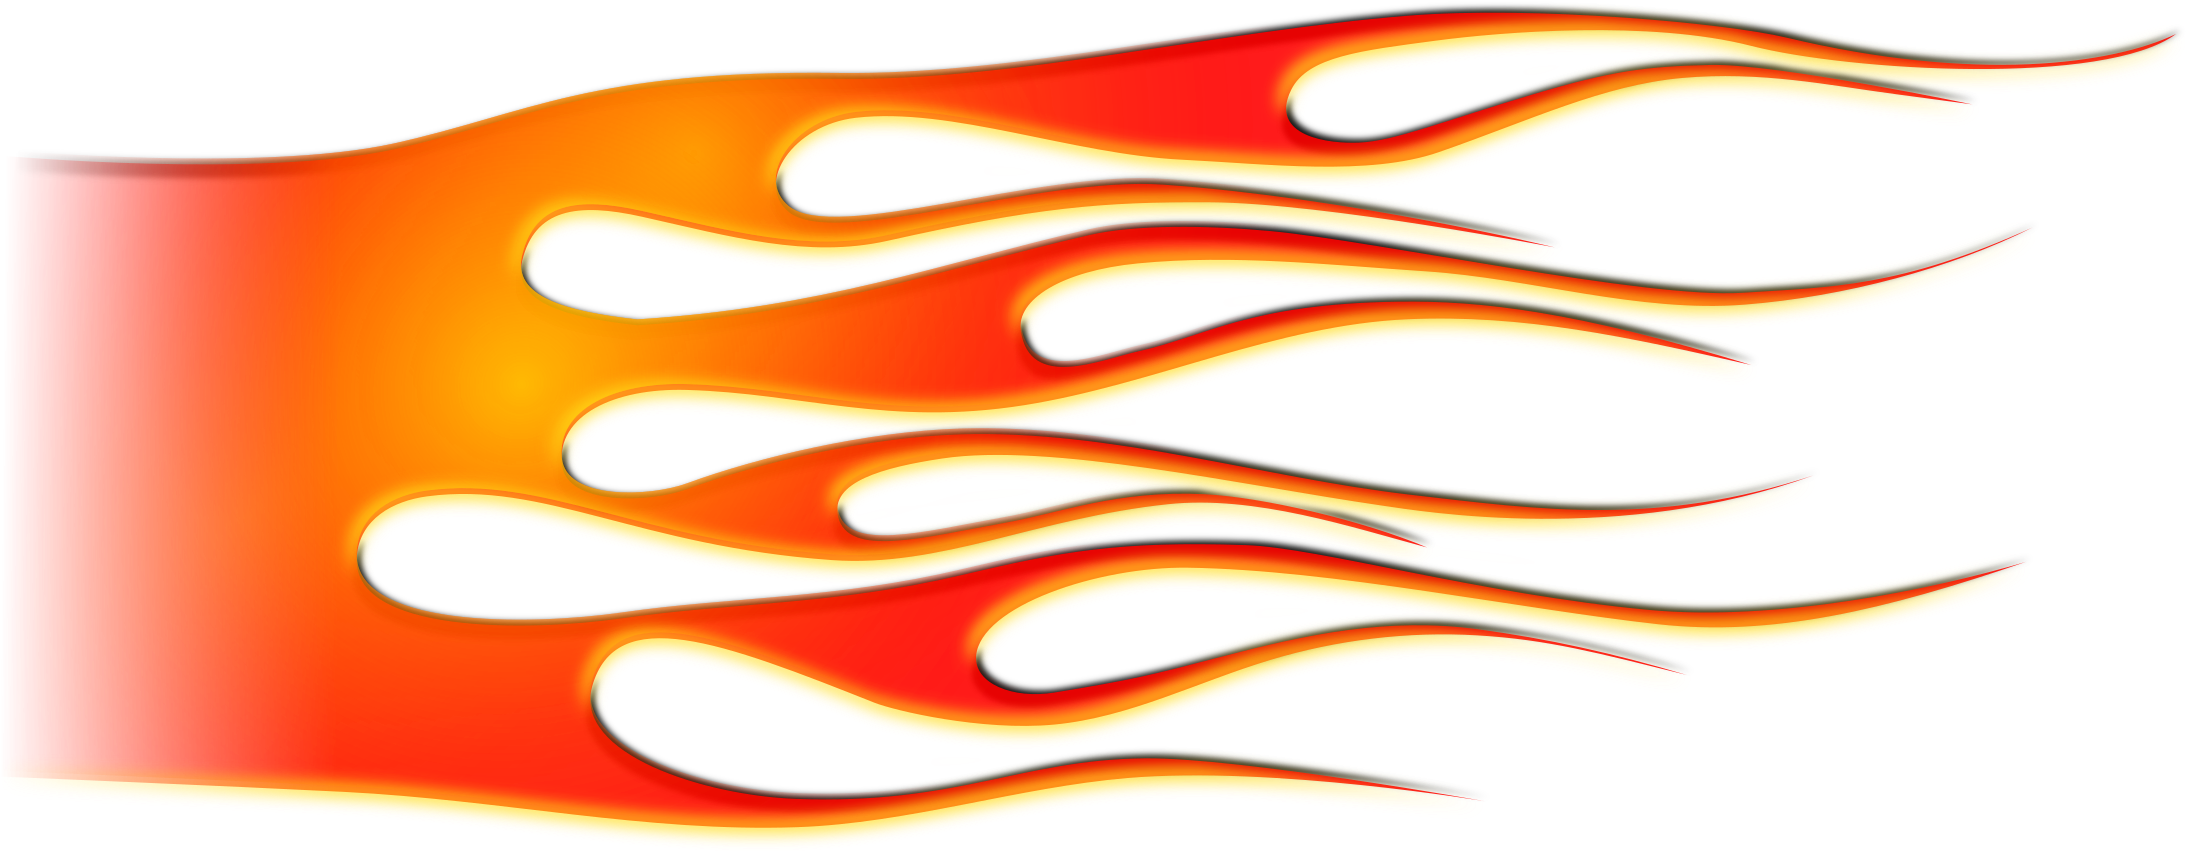 Big Image - Hot Rod Flames Png (2400x1043)